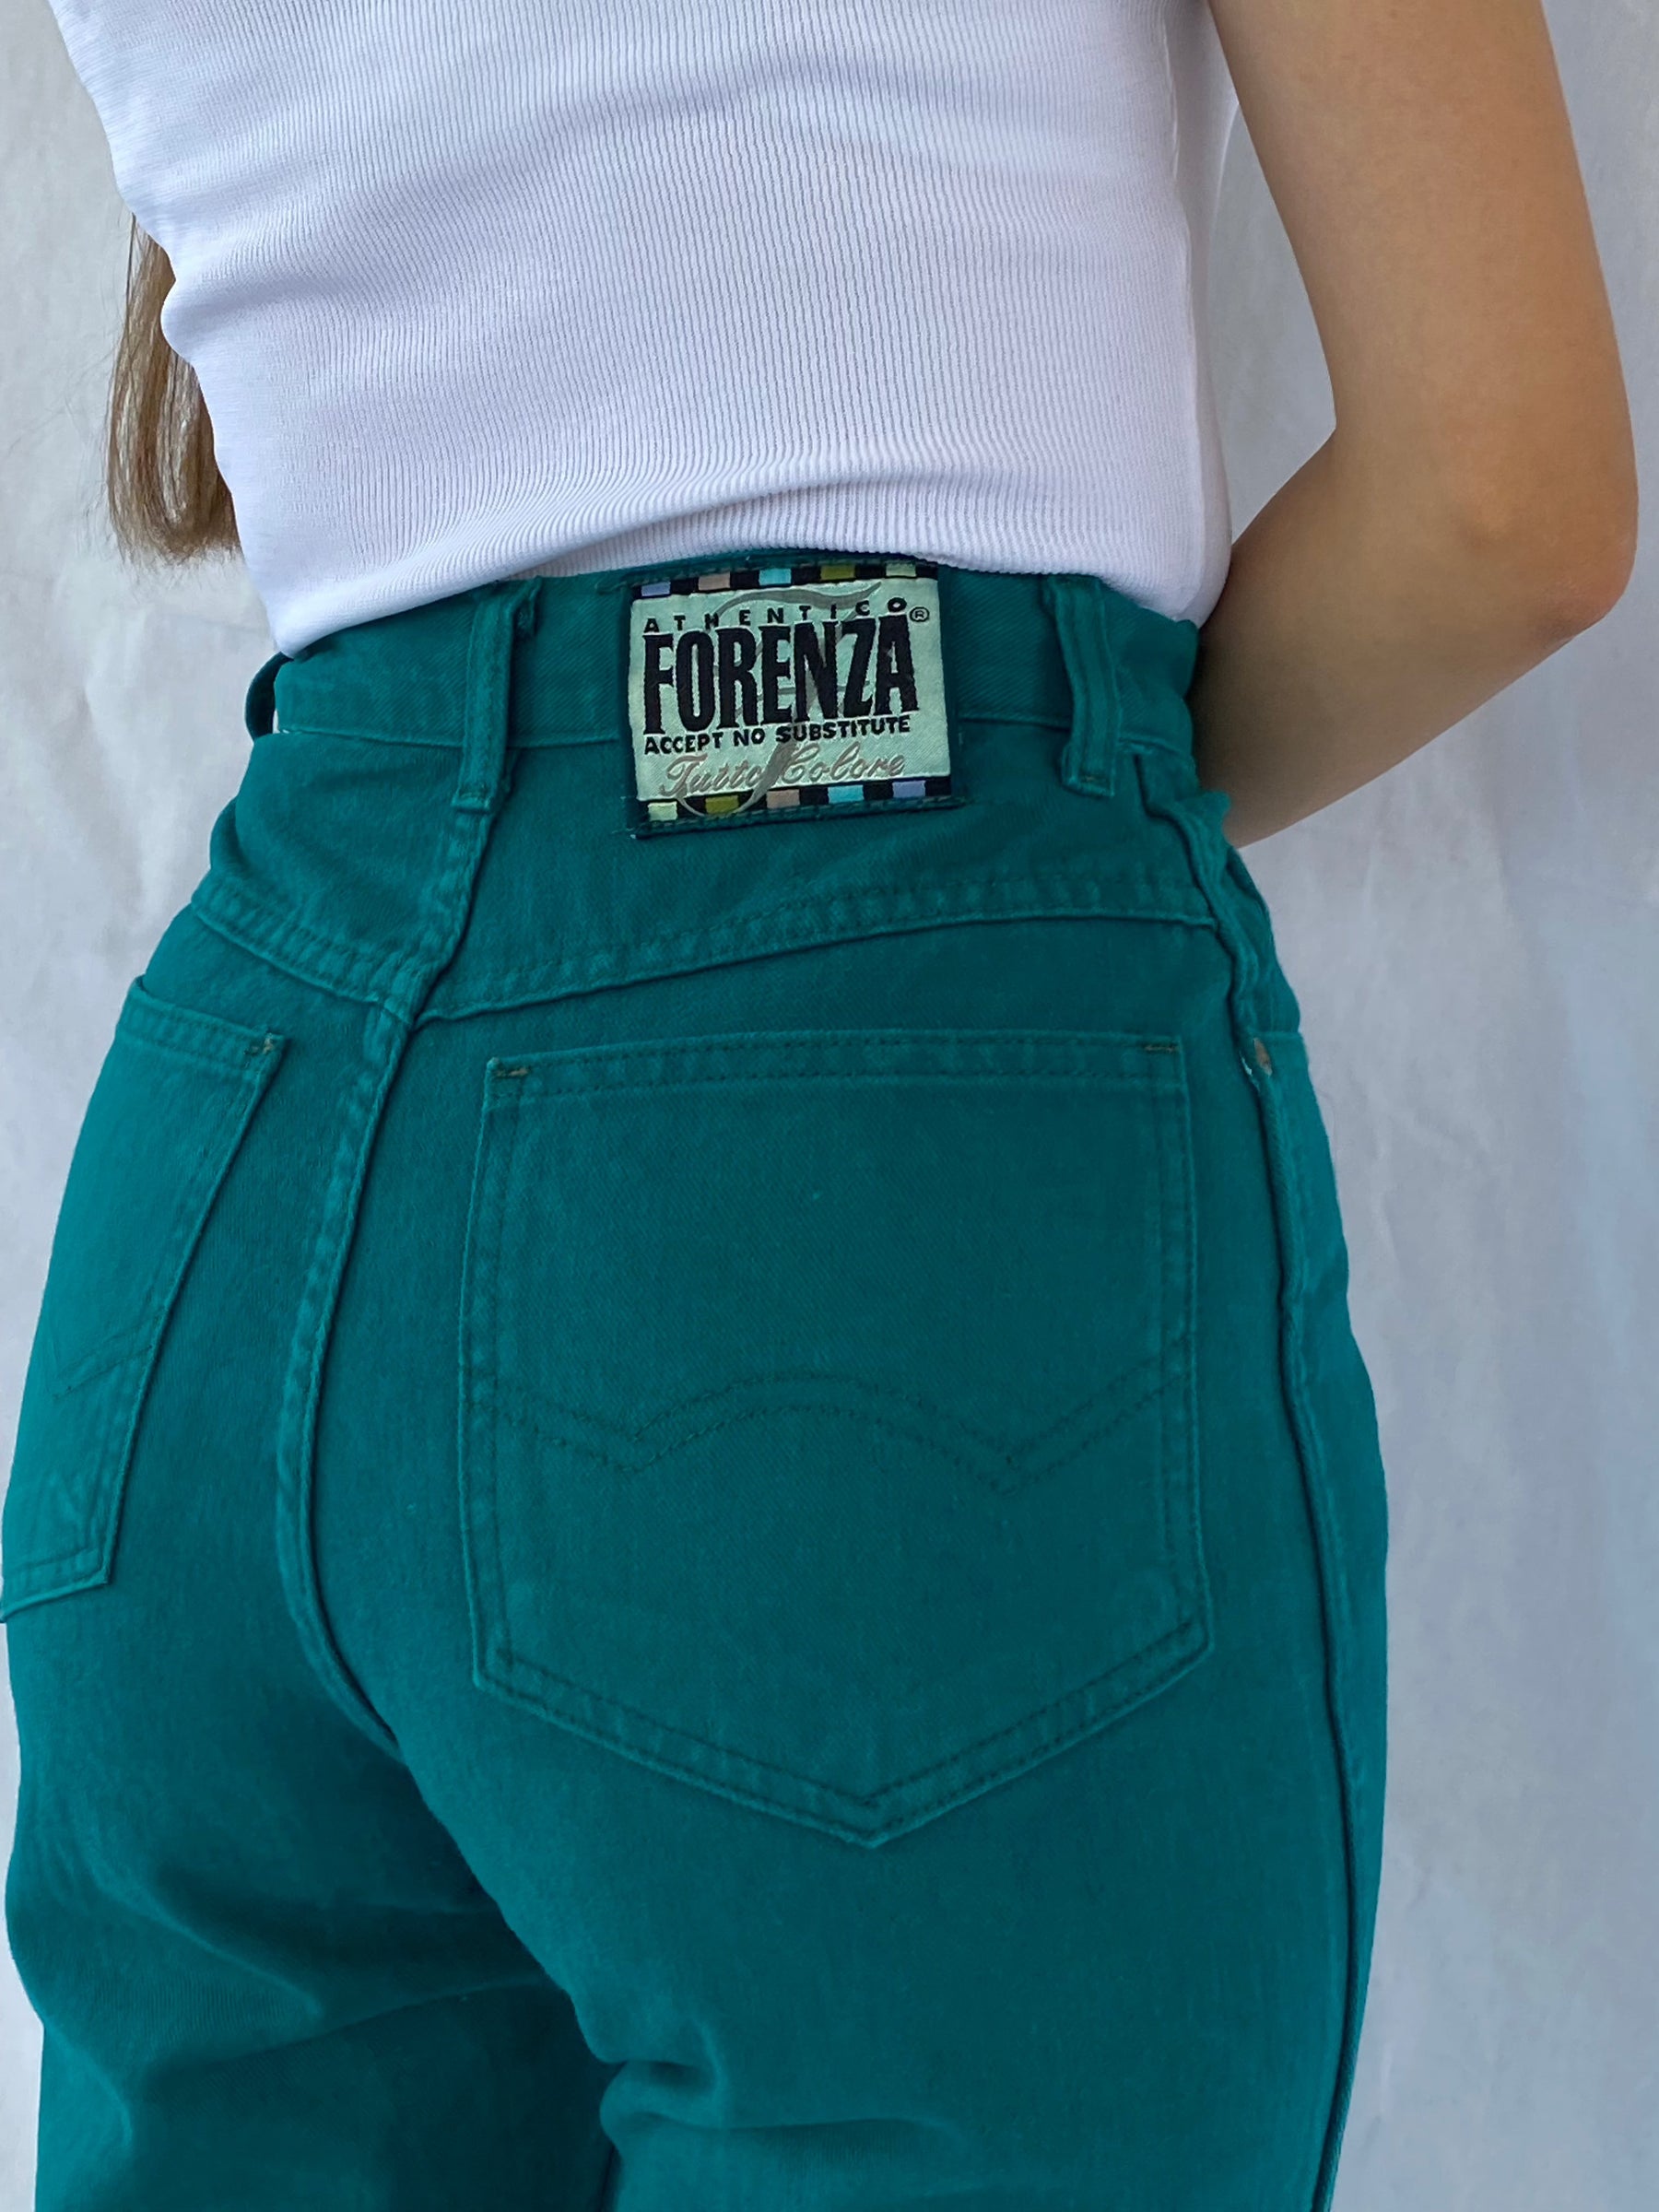 Vintage FLORENZA ATHENTICO Jeans - Balagan Vintage